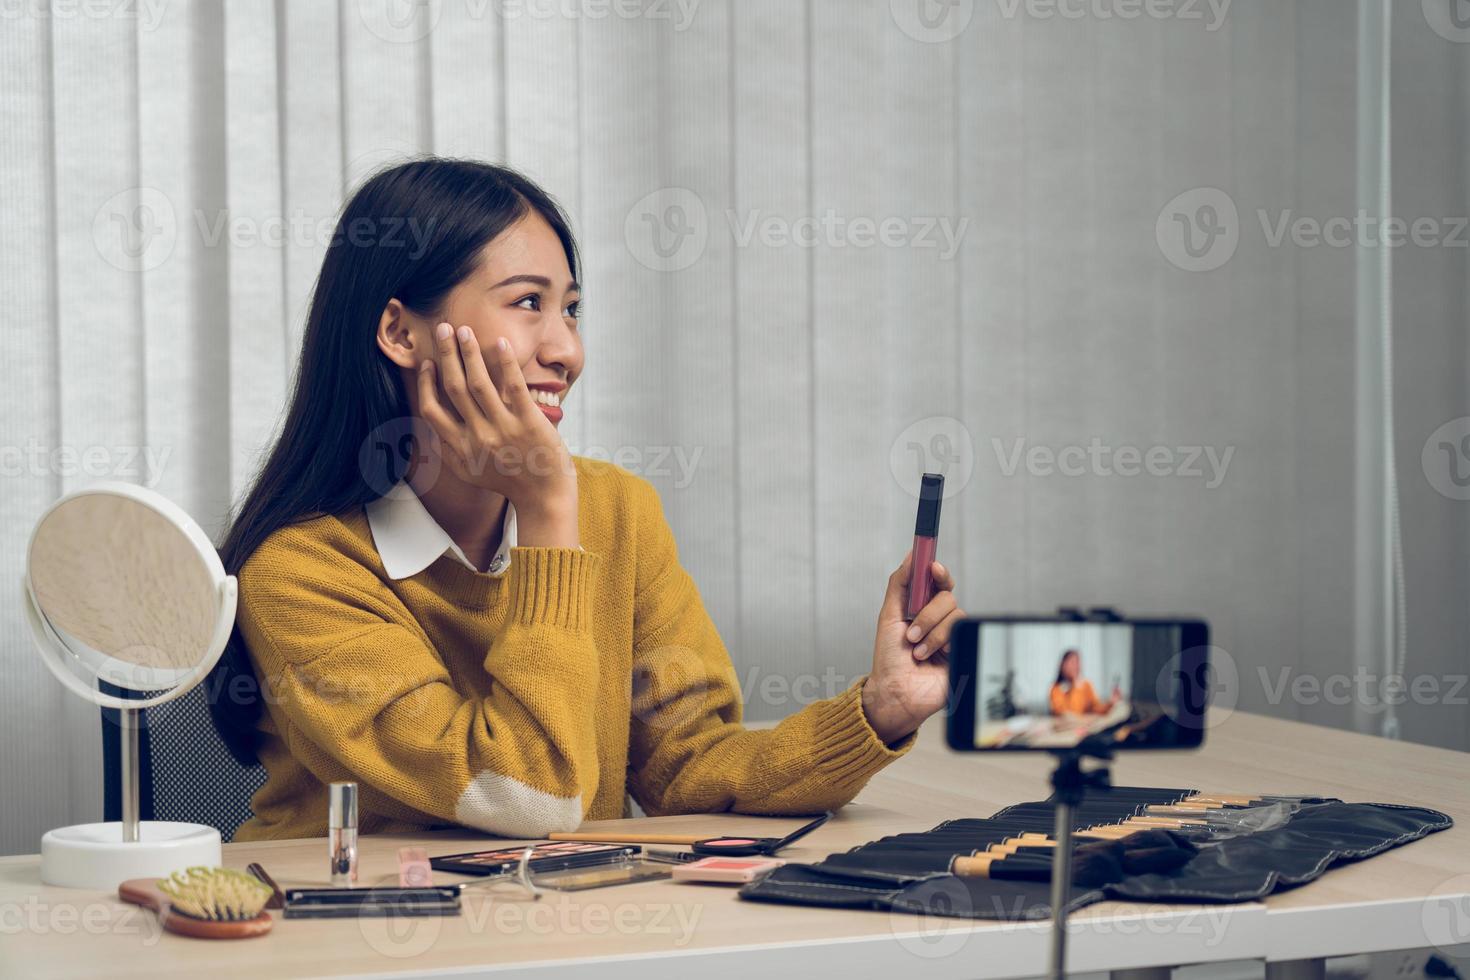 la joven bloguera de belleza asiática está exhibiendo productos cosméticos, así como tutoriales sobre cómo aplicar y grabar tutoriales de maquillaje en las redes sociales. foto